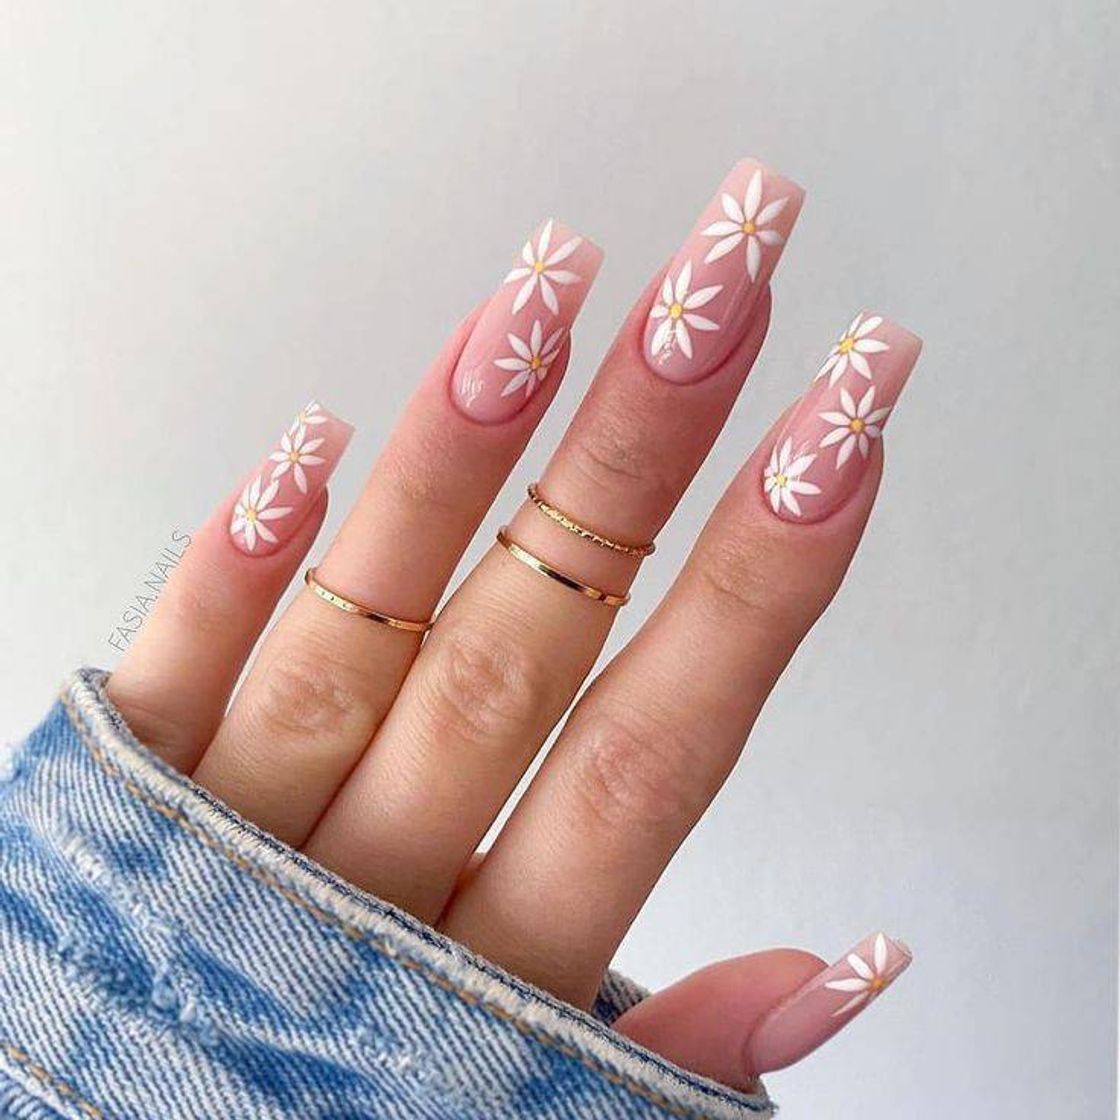 Nails | @laisouzaxx